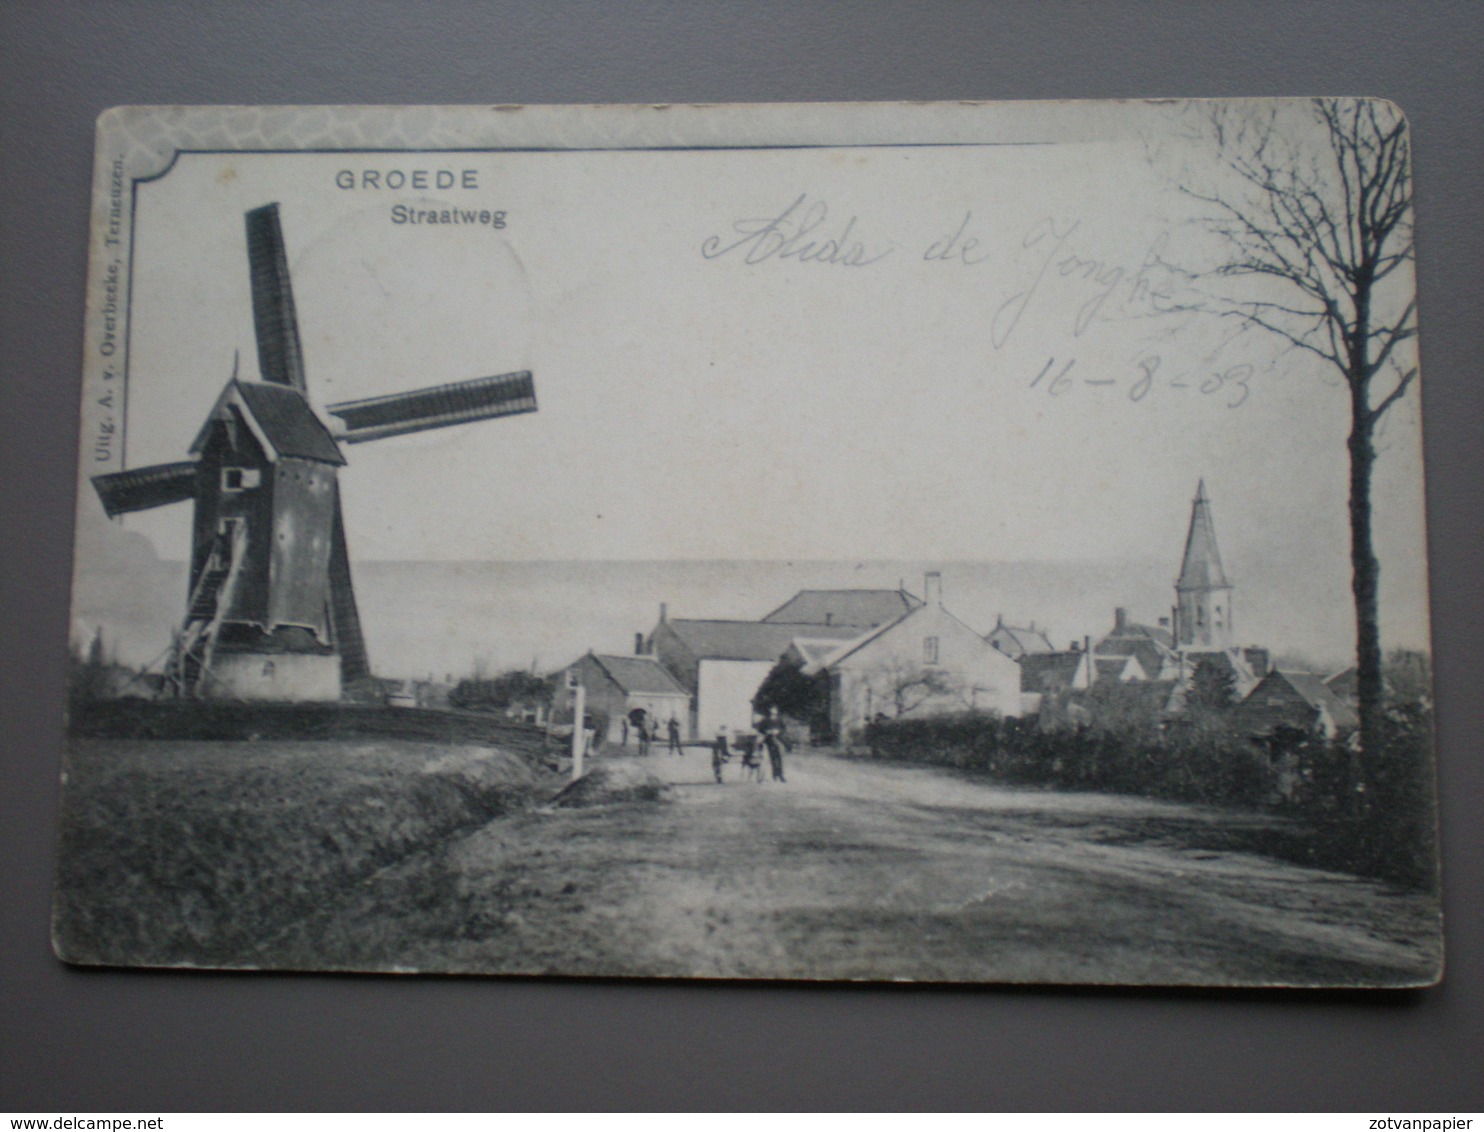 GROEDE - STRAATWEG 1903 - UITG. A. VAN OVERBEEKE - Sluis